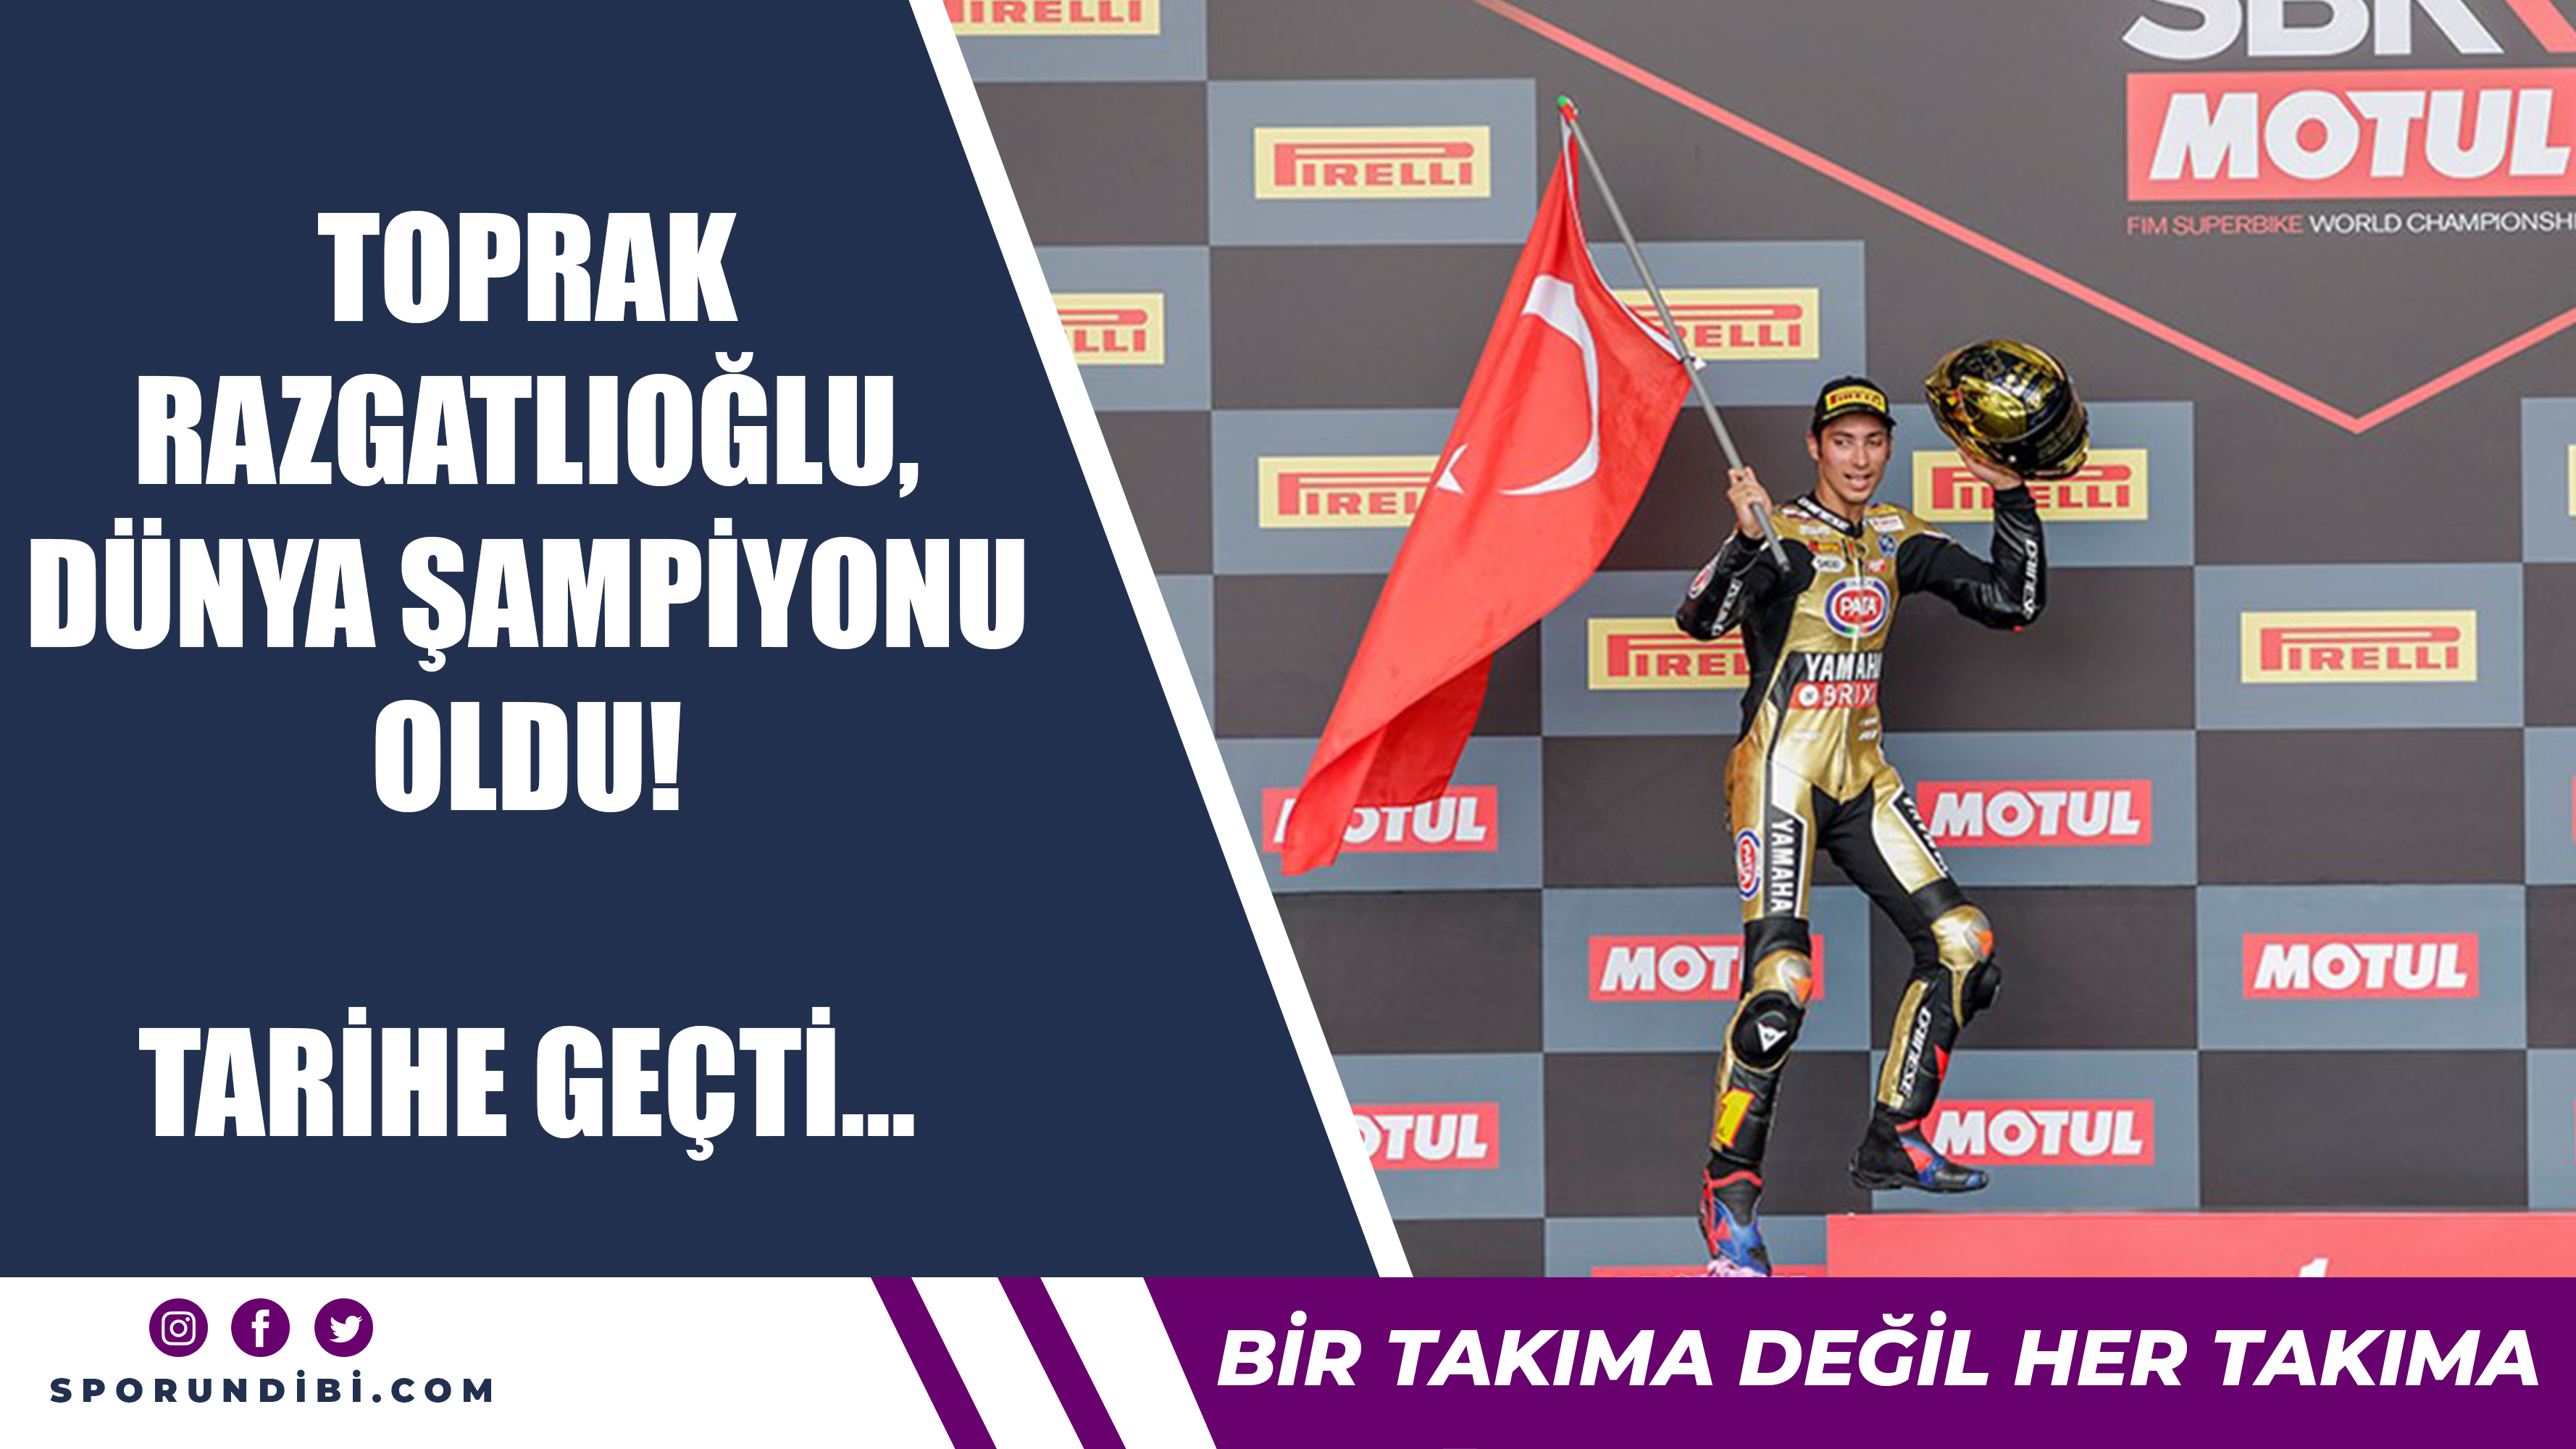 Toprak Razgatlıoğlu dünya şampiyonu oldu! Tarihe geçti...